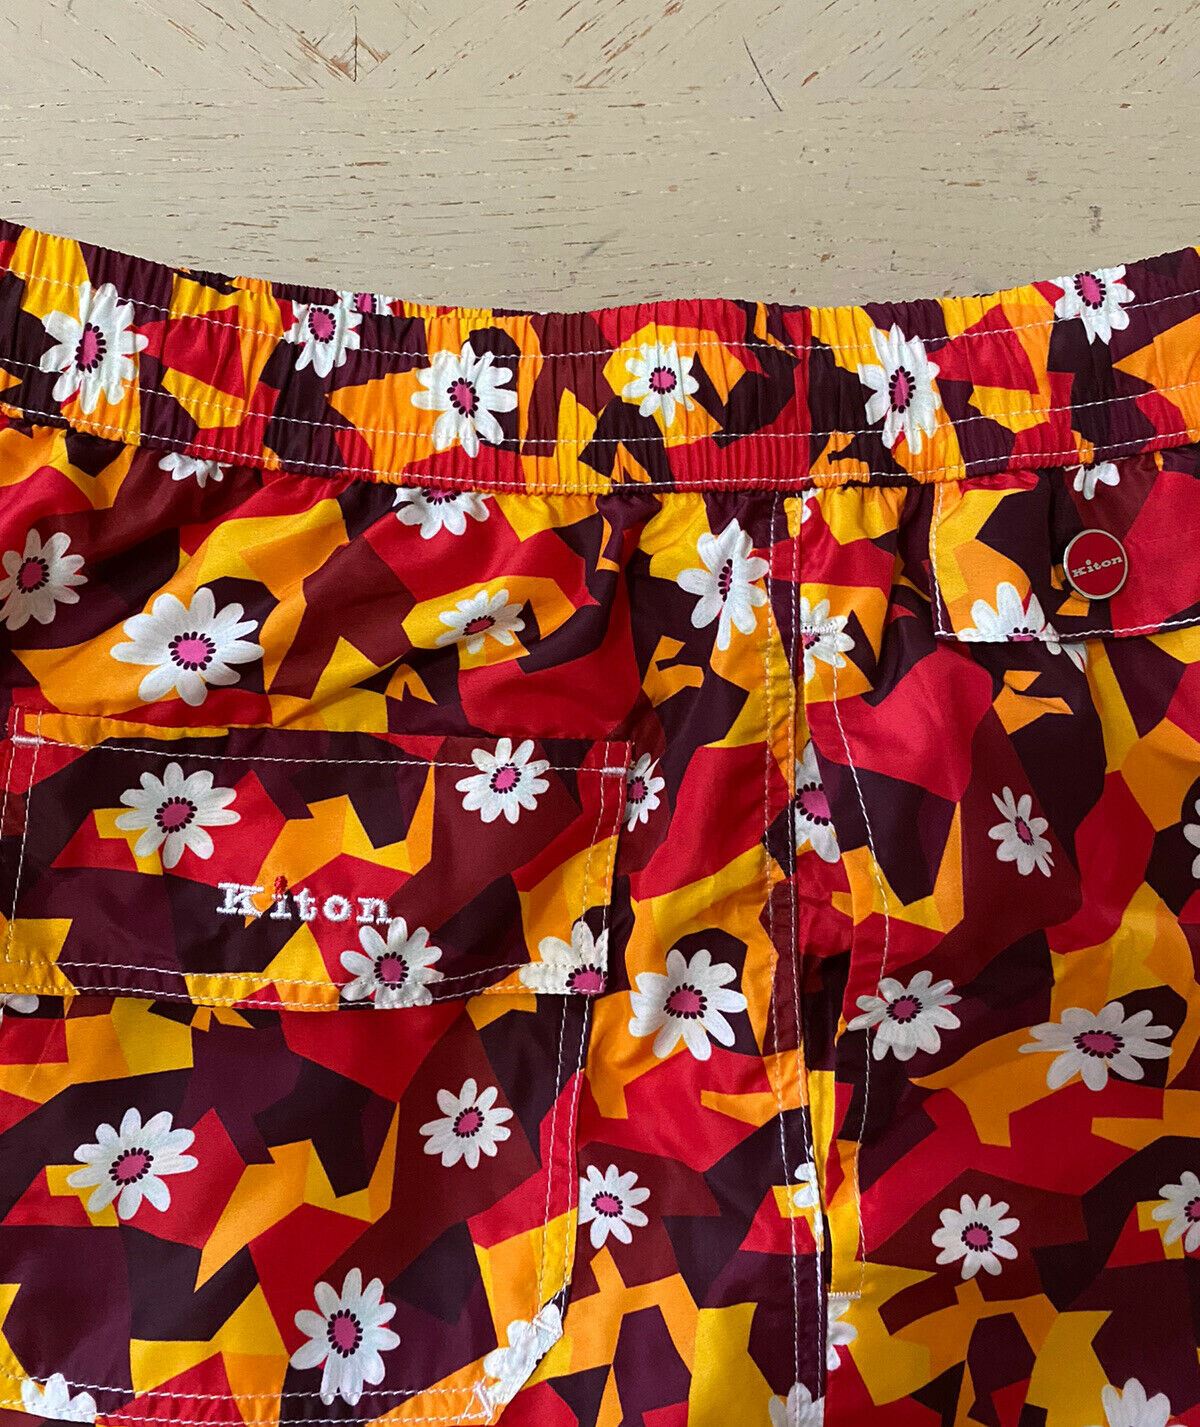 Мужские шорты для плавания NWT Kiton с геометрическим цветочным принтом, оранжевые/разноцветные, размер M